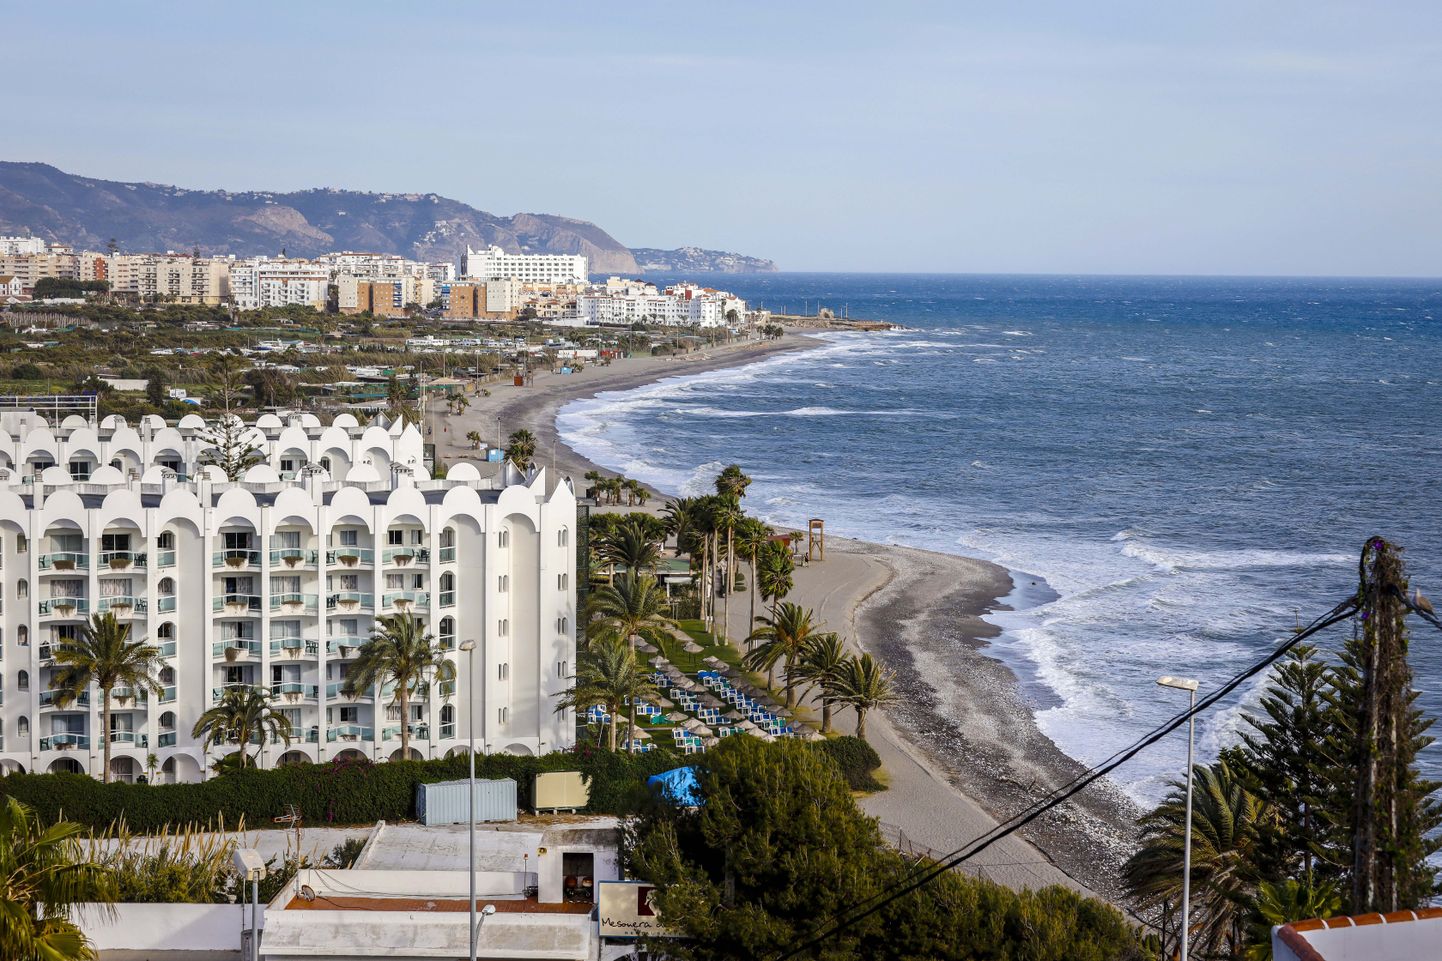 Hispaania päikeserannik Costa del Sol on meelispaigaks ka paljudele kriminaalidele.